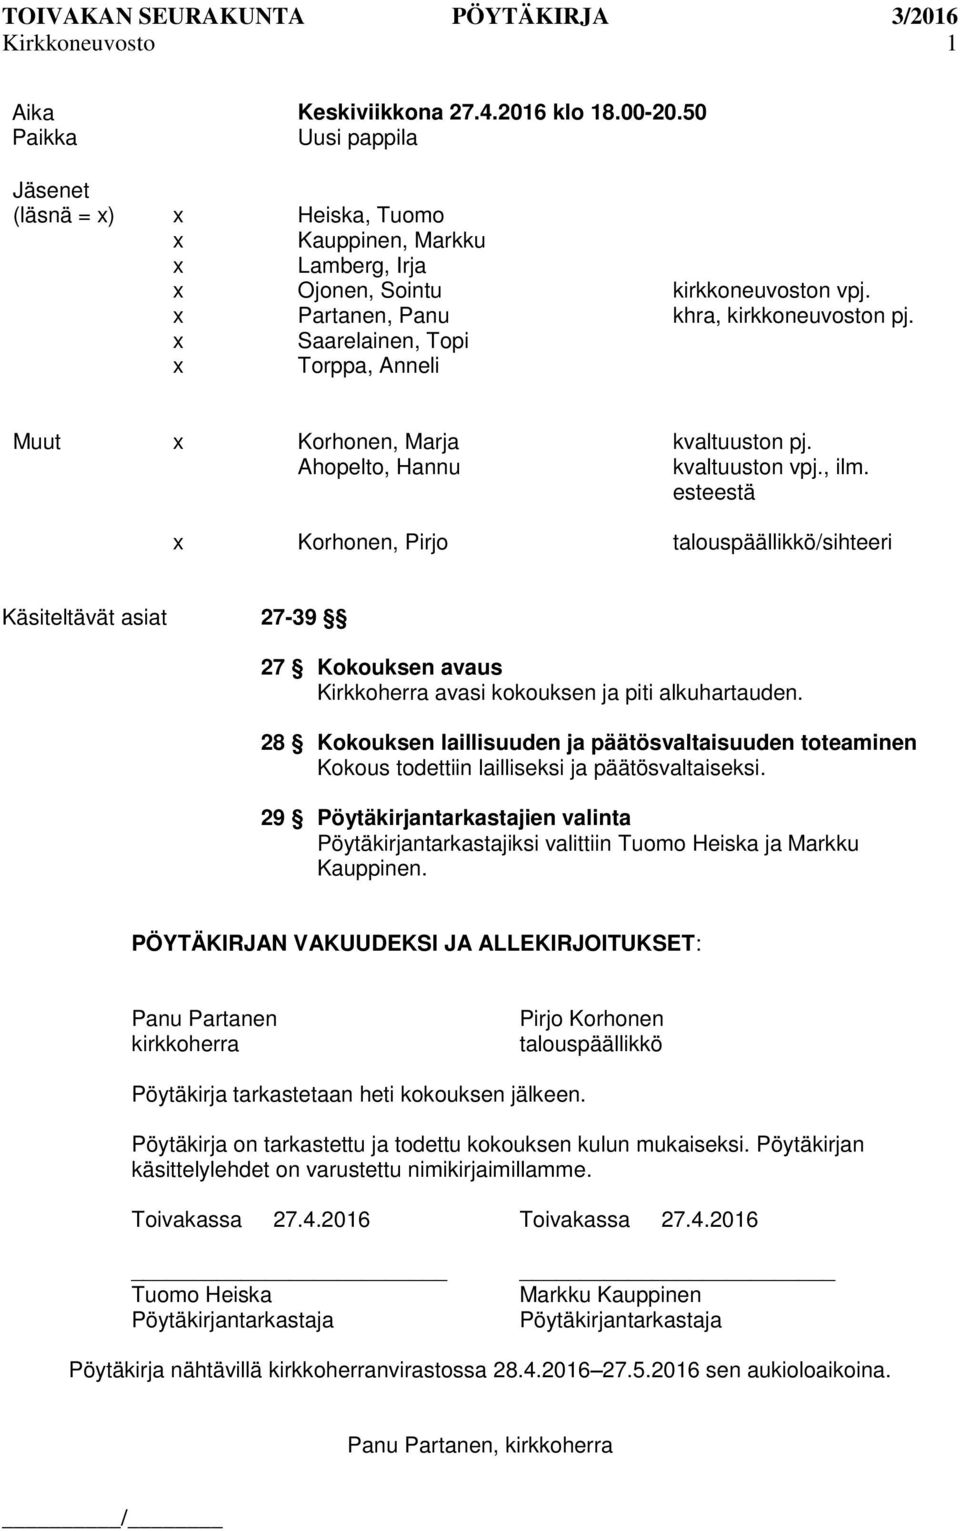 esteestä Korhonen, Pirjo talouspäällikkö/sihteeri Käsiteltävät asiat 27-39 27 Kokouksen avaus Kirkkoherra avasi kokouksen ja piti alkuhartauden.